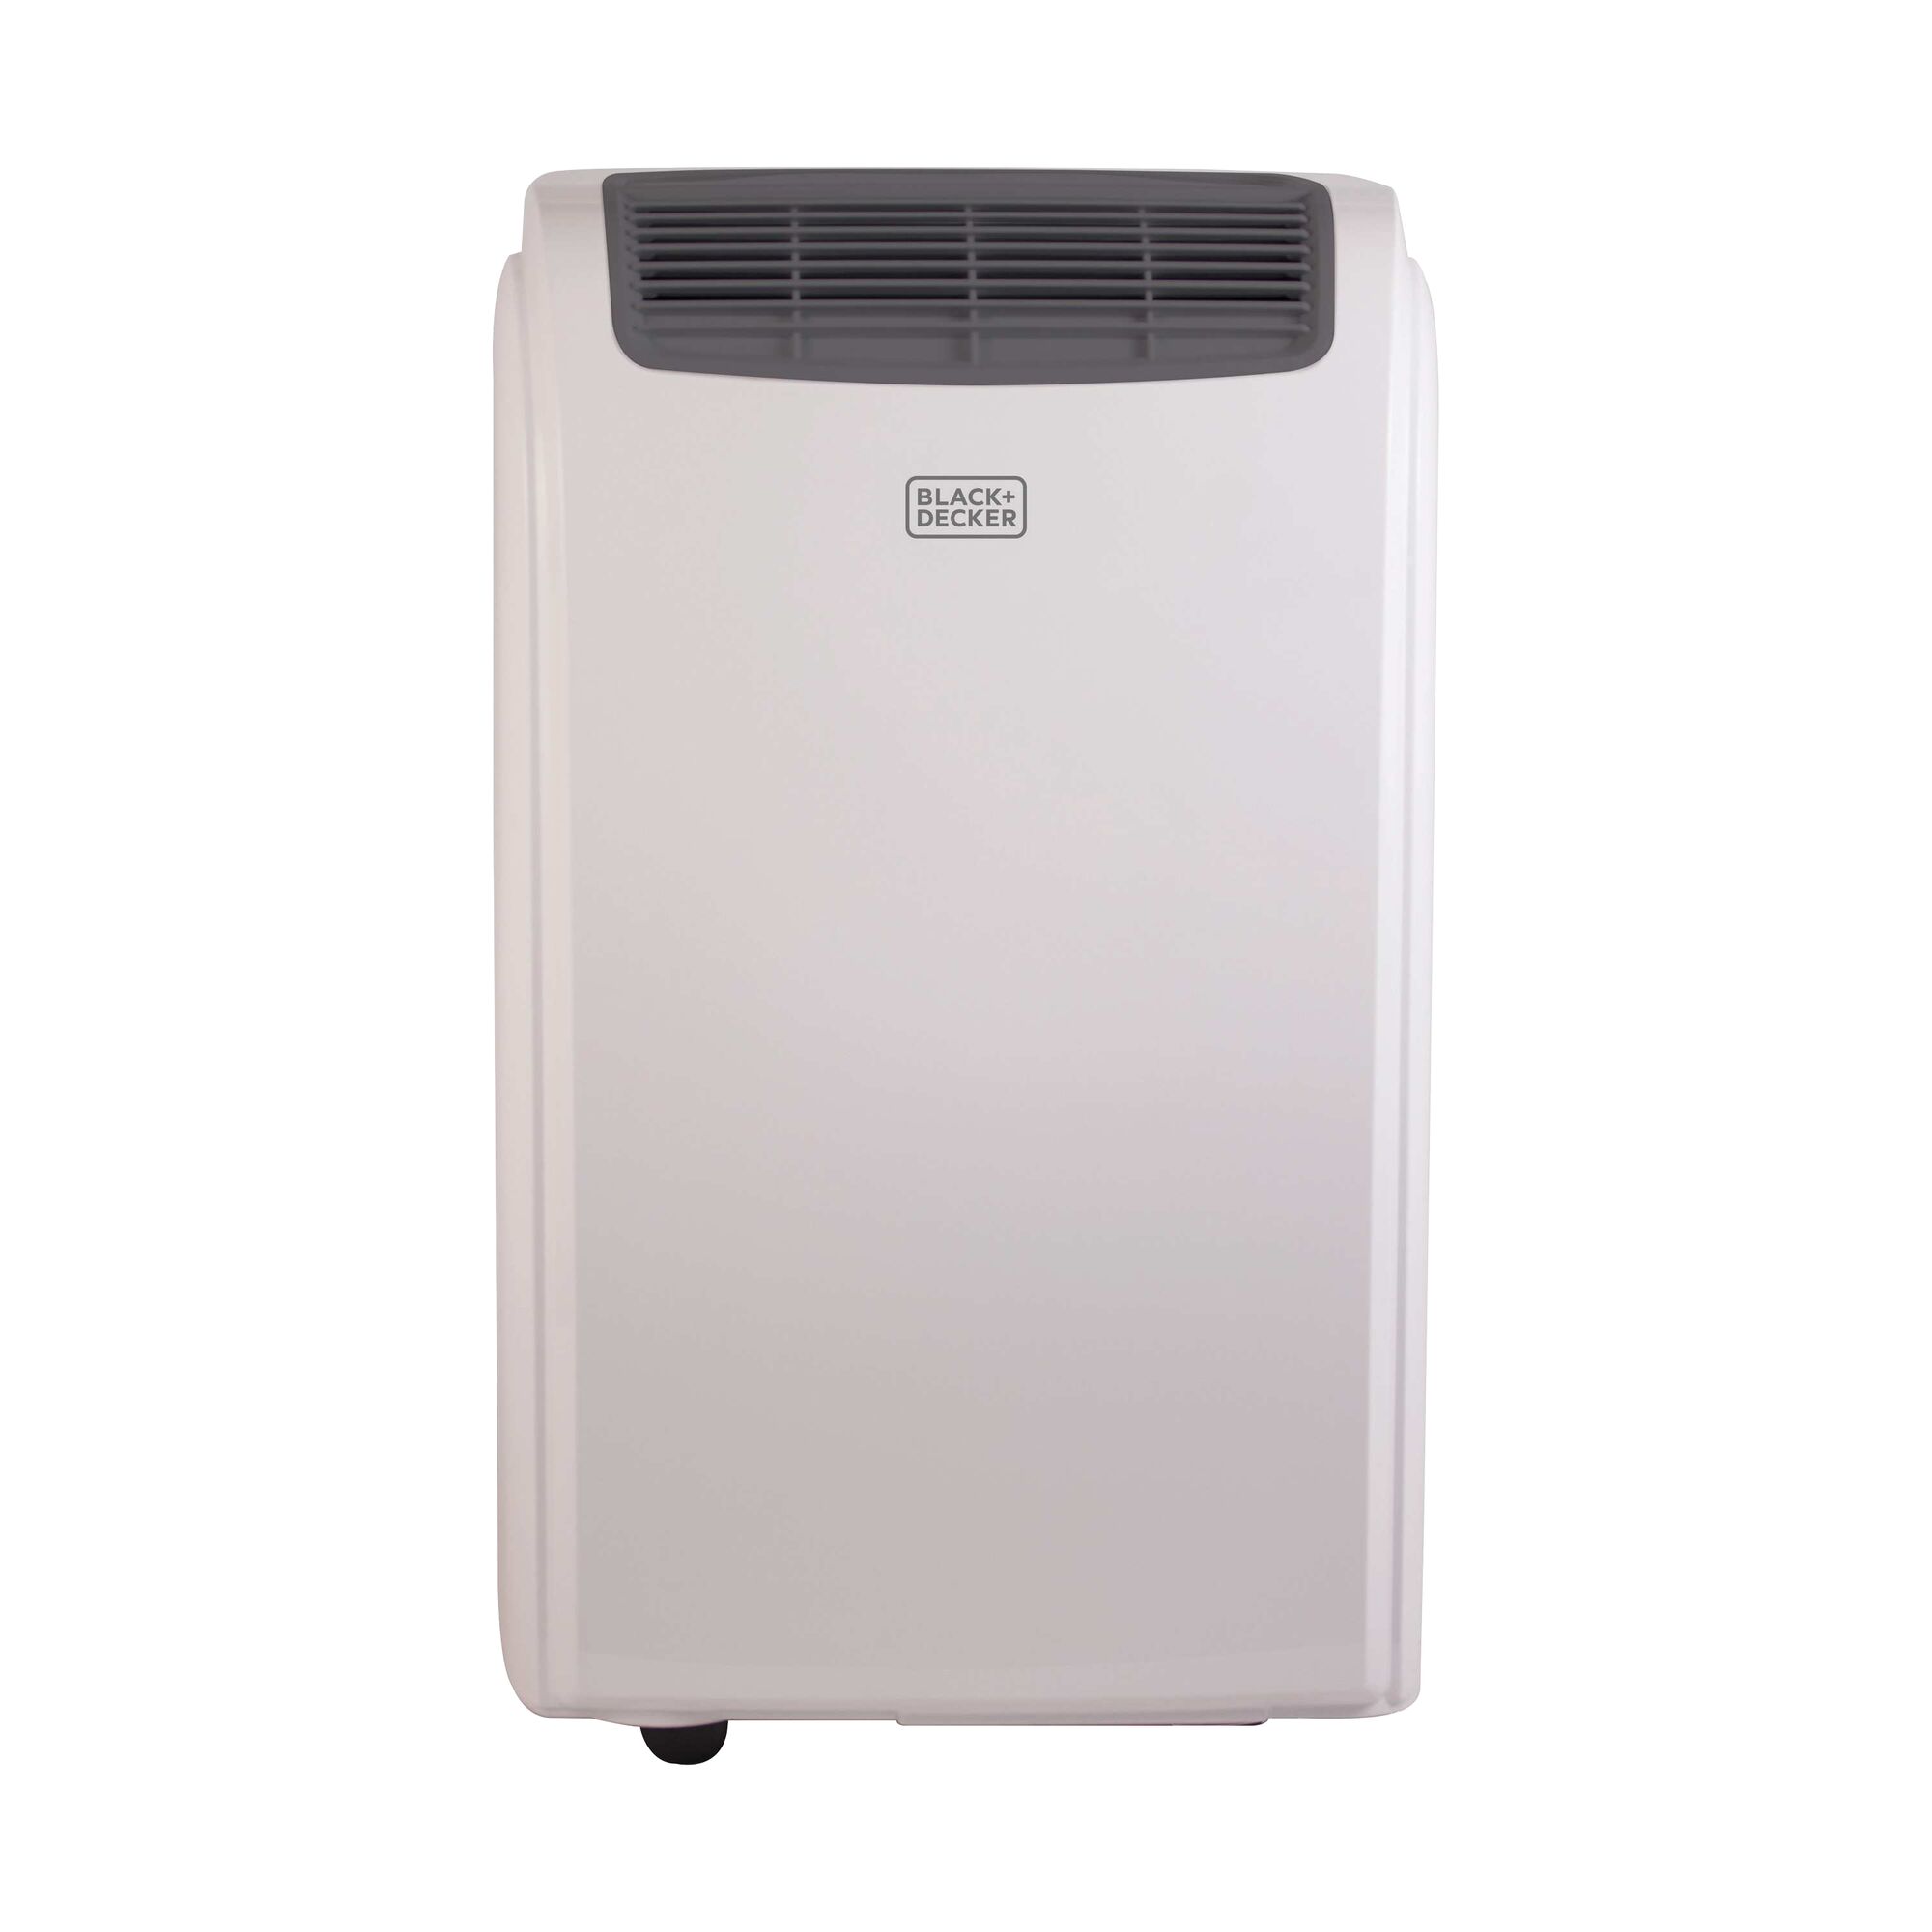 Portable Air Conditioner.